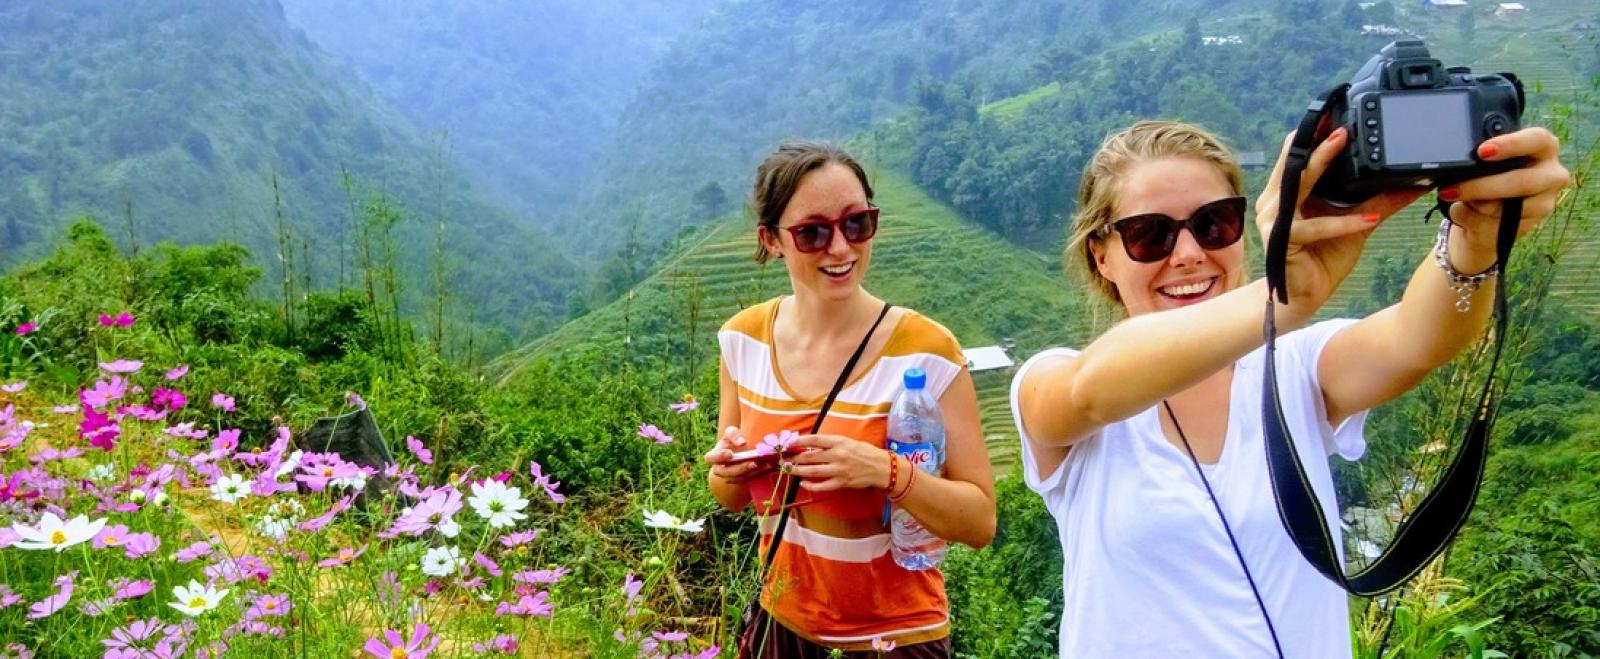 Gap year volunteers take a selfie in the mountains of Vietnam.